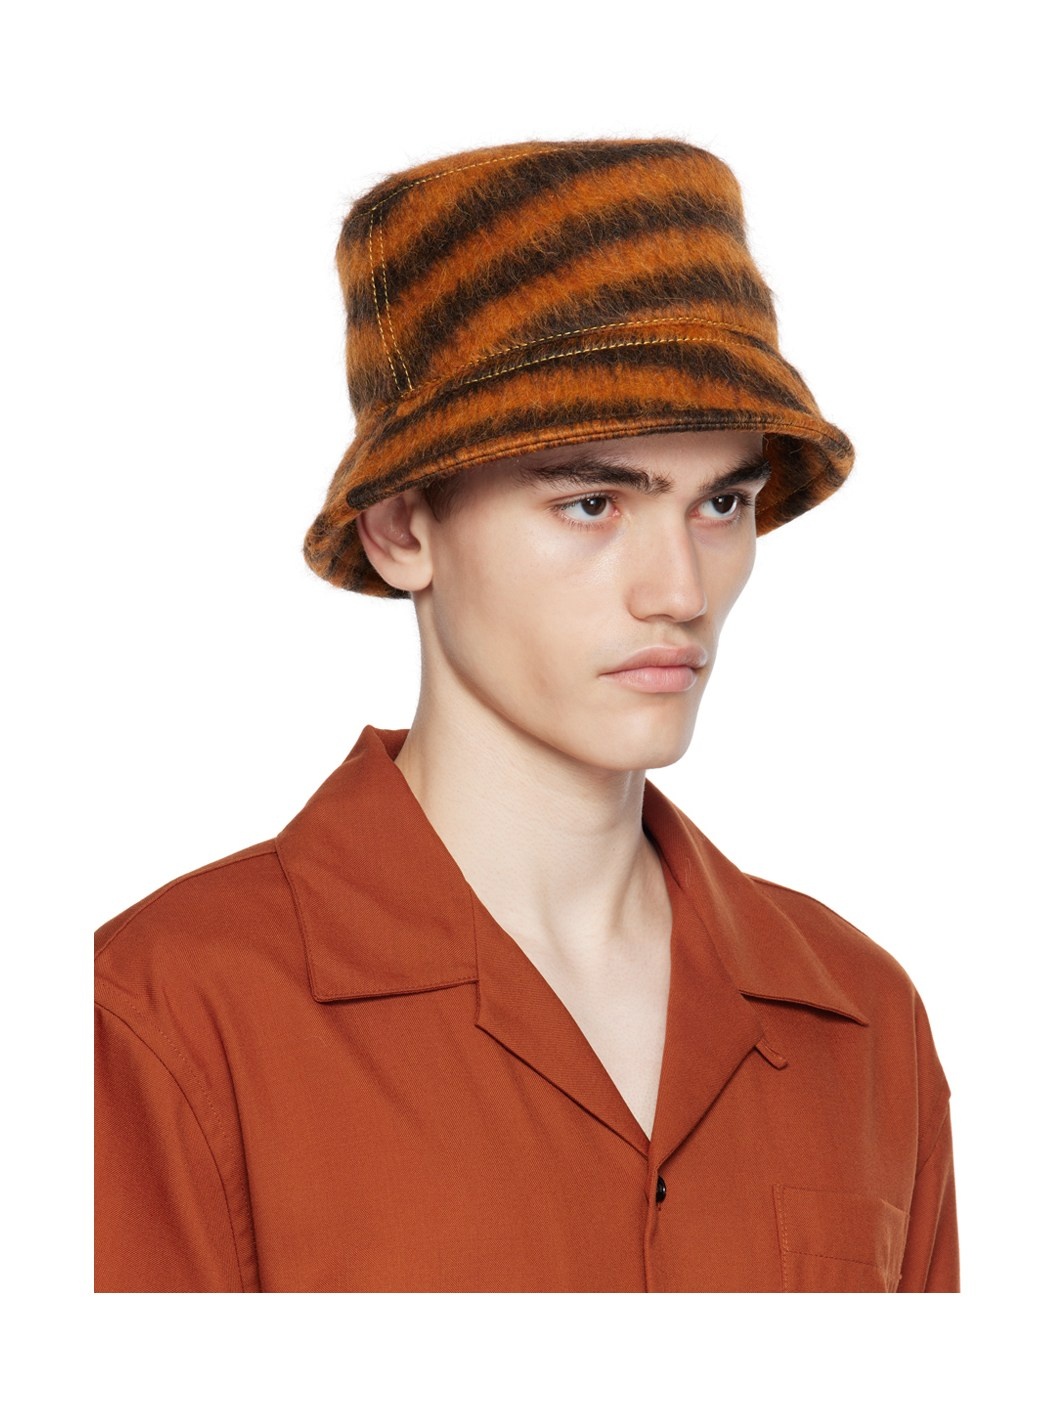 Black & Orange Striped Bucket Hat - 2